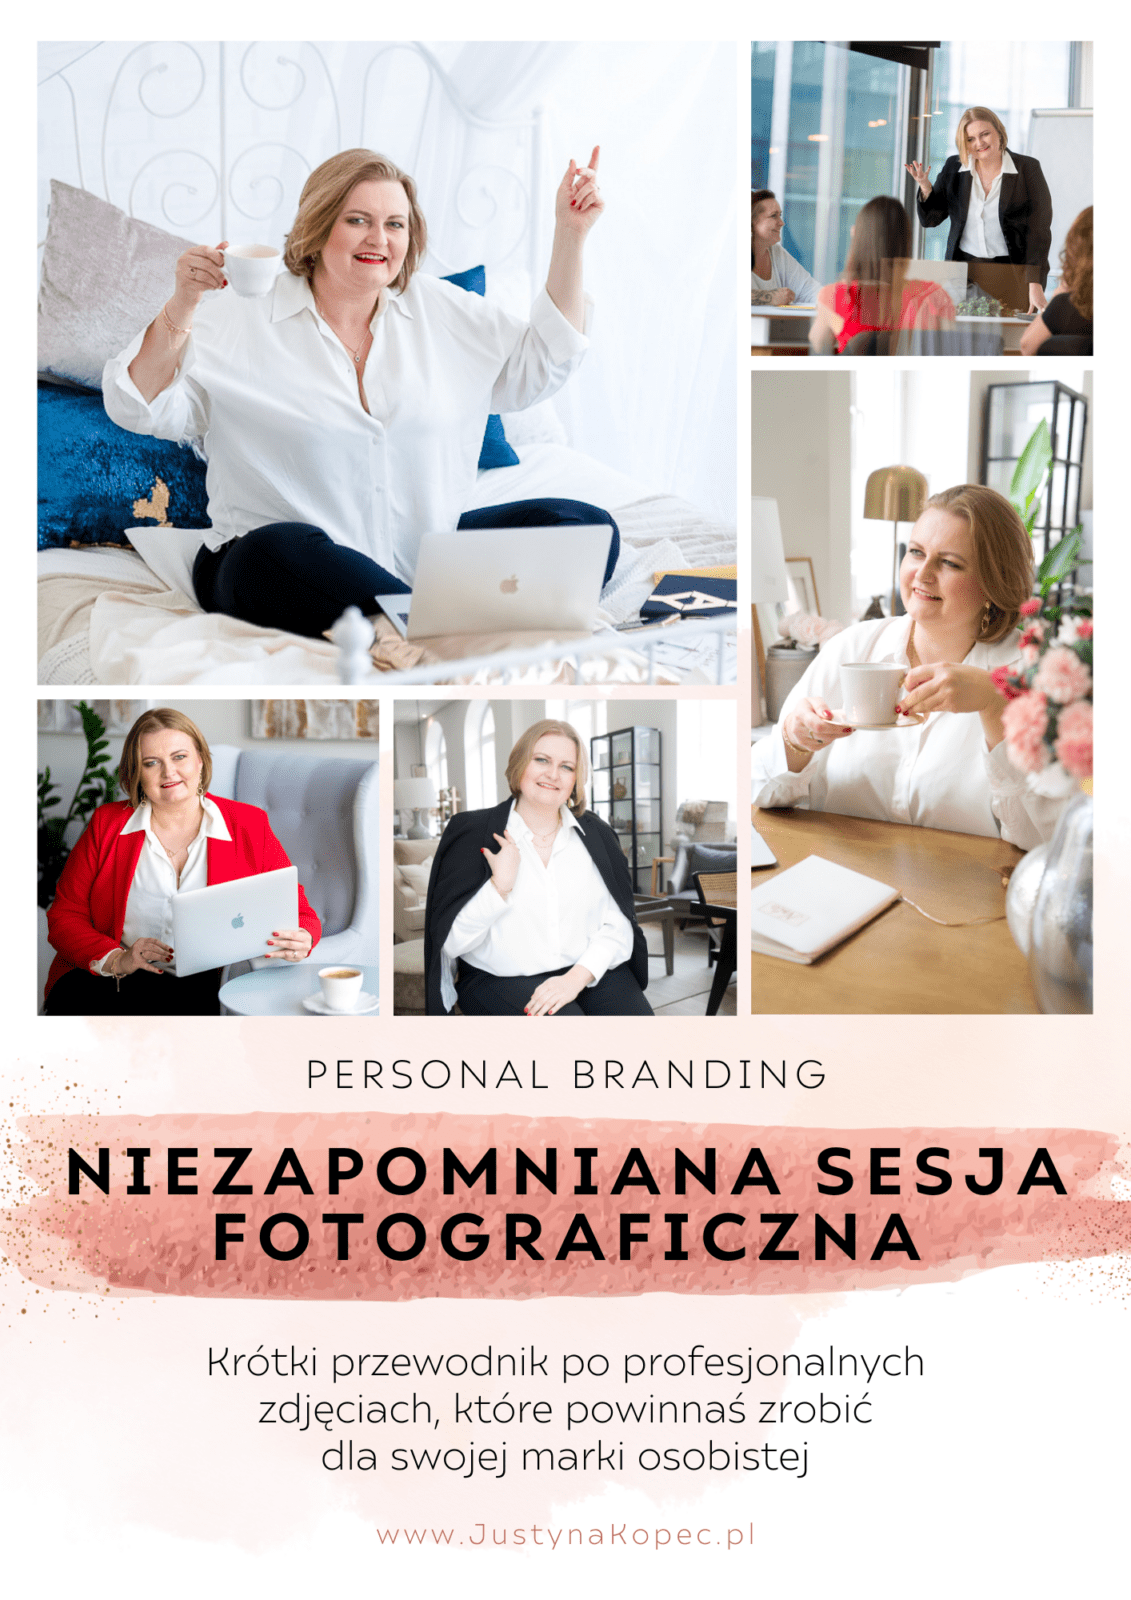 Niezapomniana sesja fotograficzna Justyna Kopeć